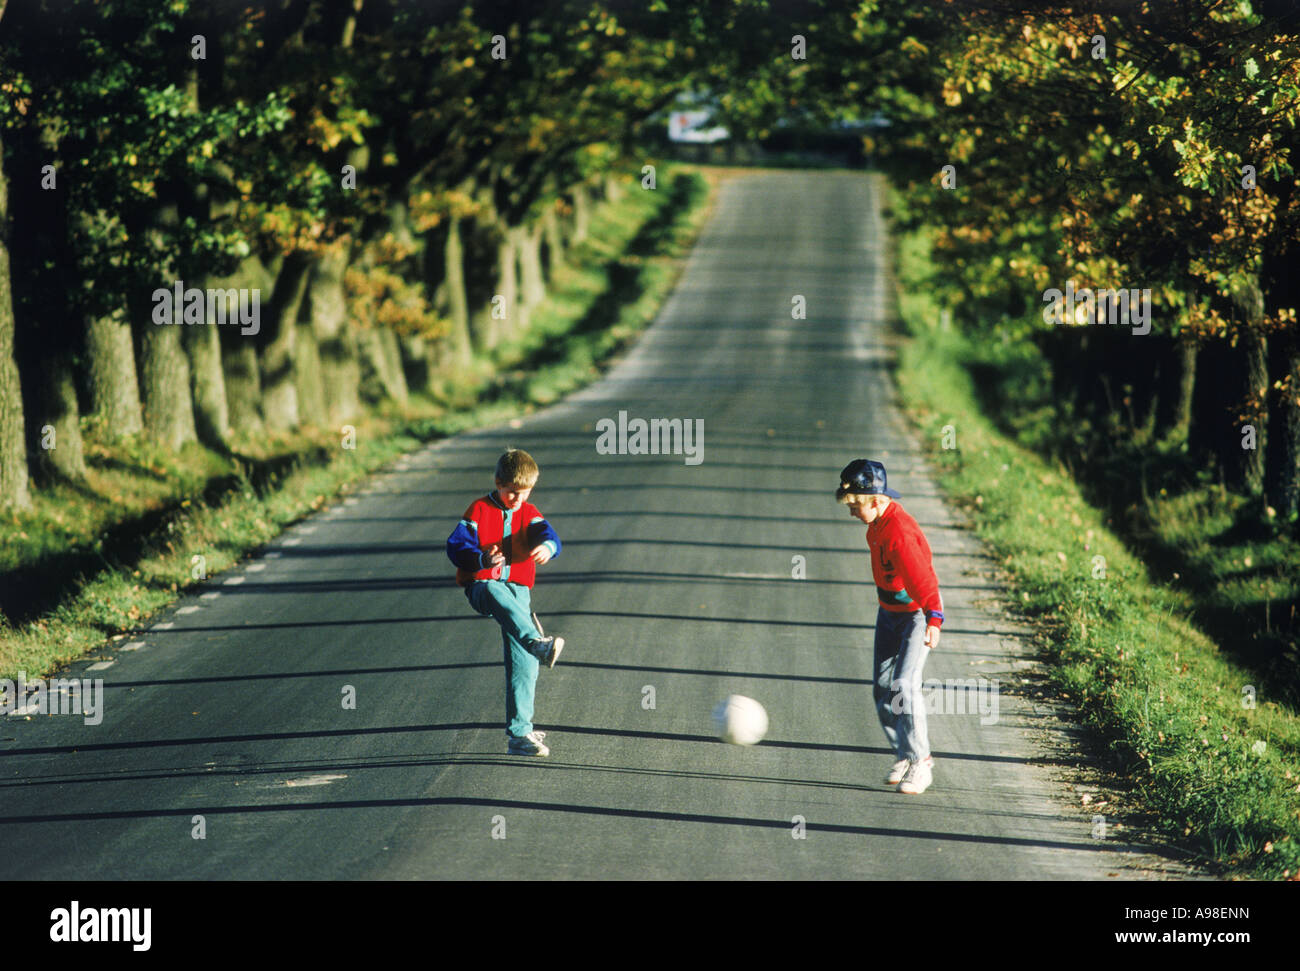 Les Garçons 7-11 ans en été des coups de ballon de soccer (football) sur une route de campagne bordée d'arbres Banque D'Images